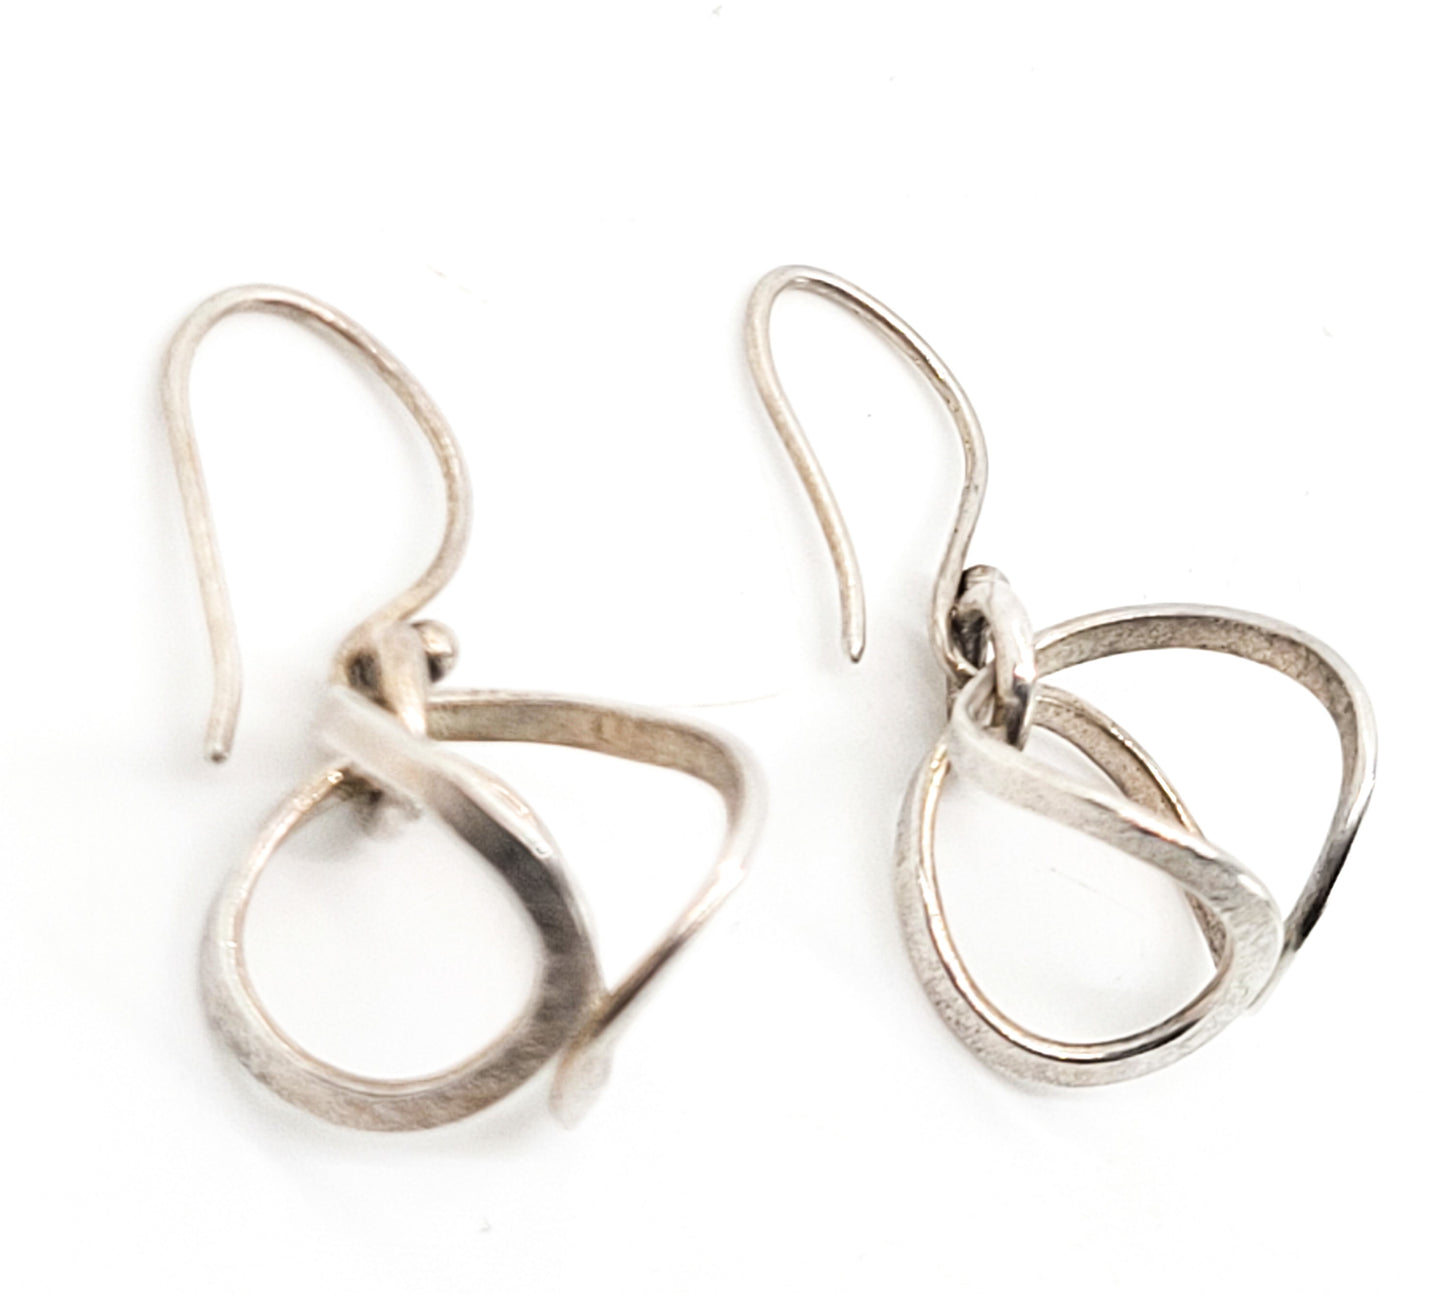 Loeber and Look Abstract modernist hoop drop retro vintage sterling silver earrings